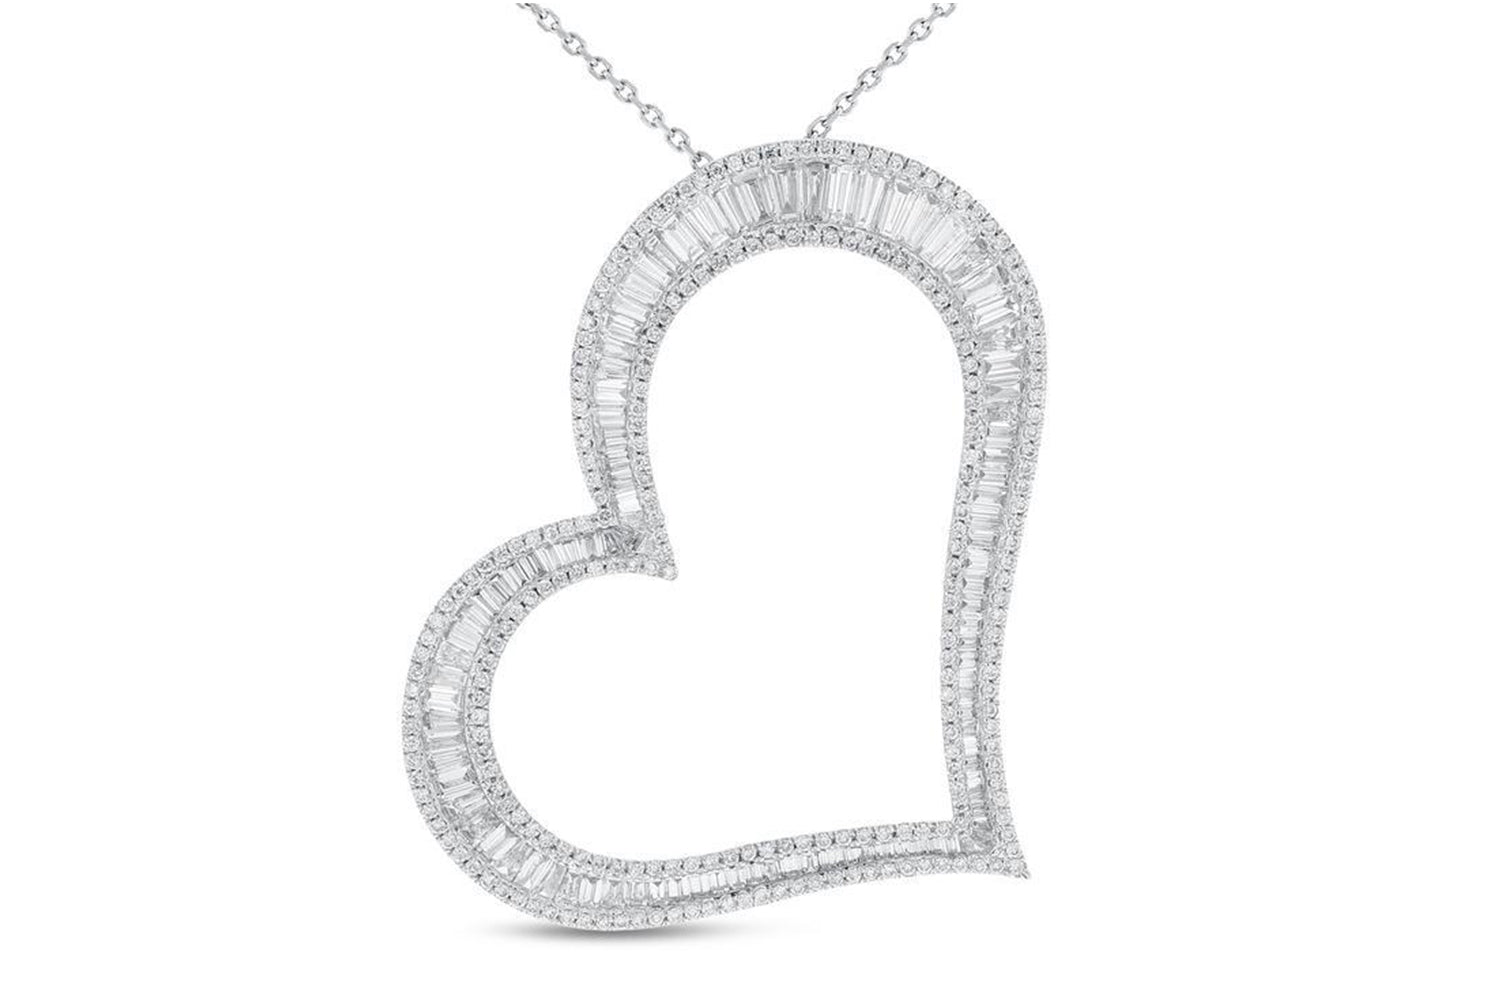 'Heart Pendant' 18K White Gold Diamond Heart Pendant, 5.99 Carats